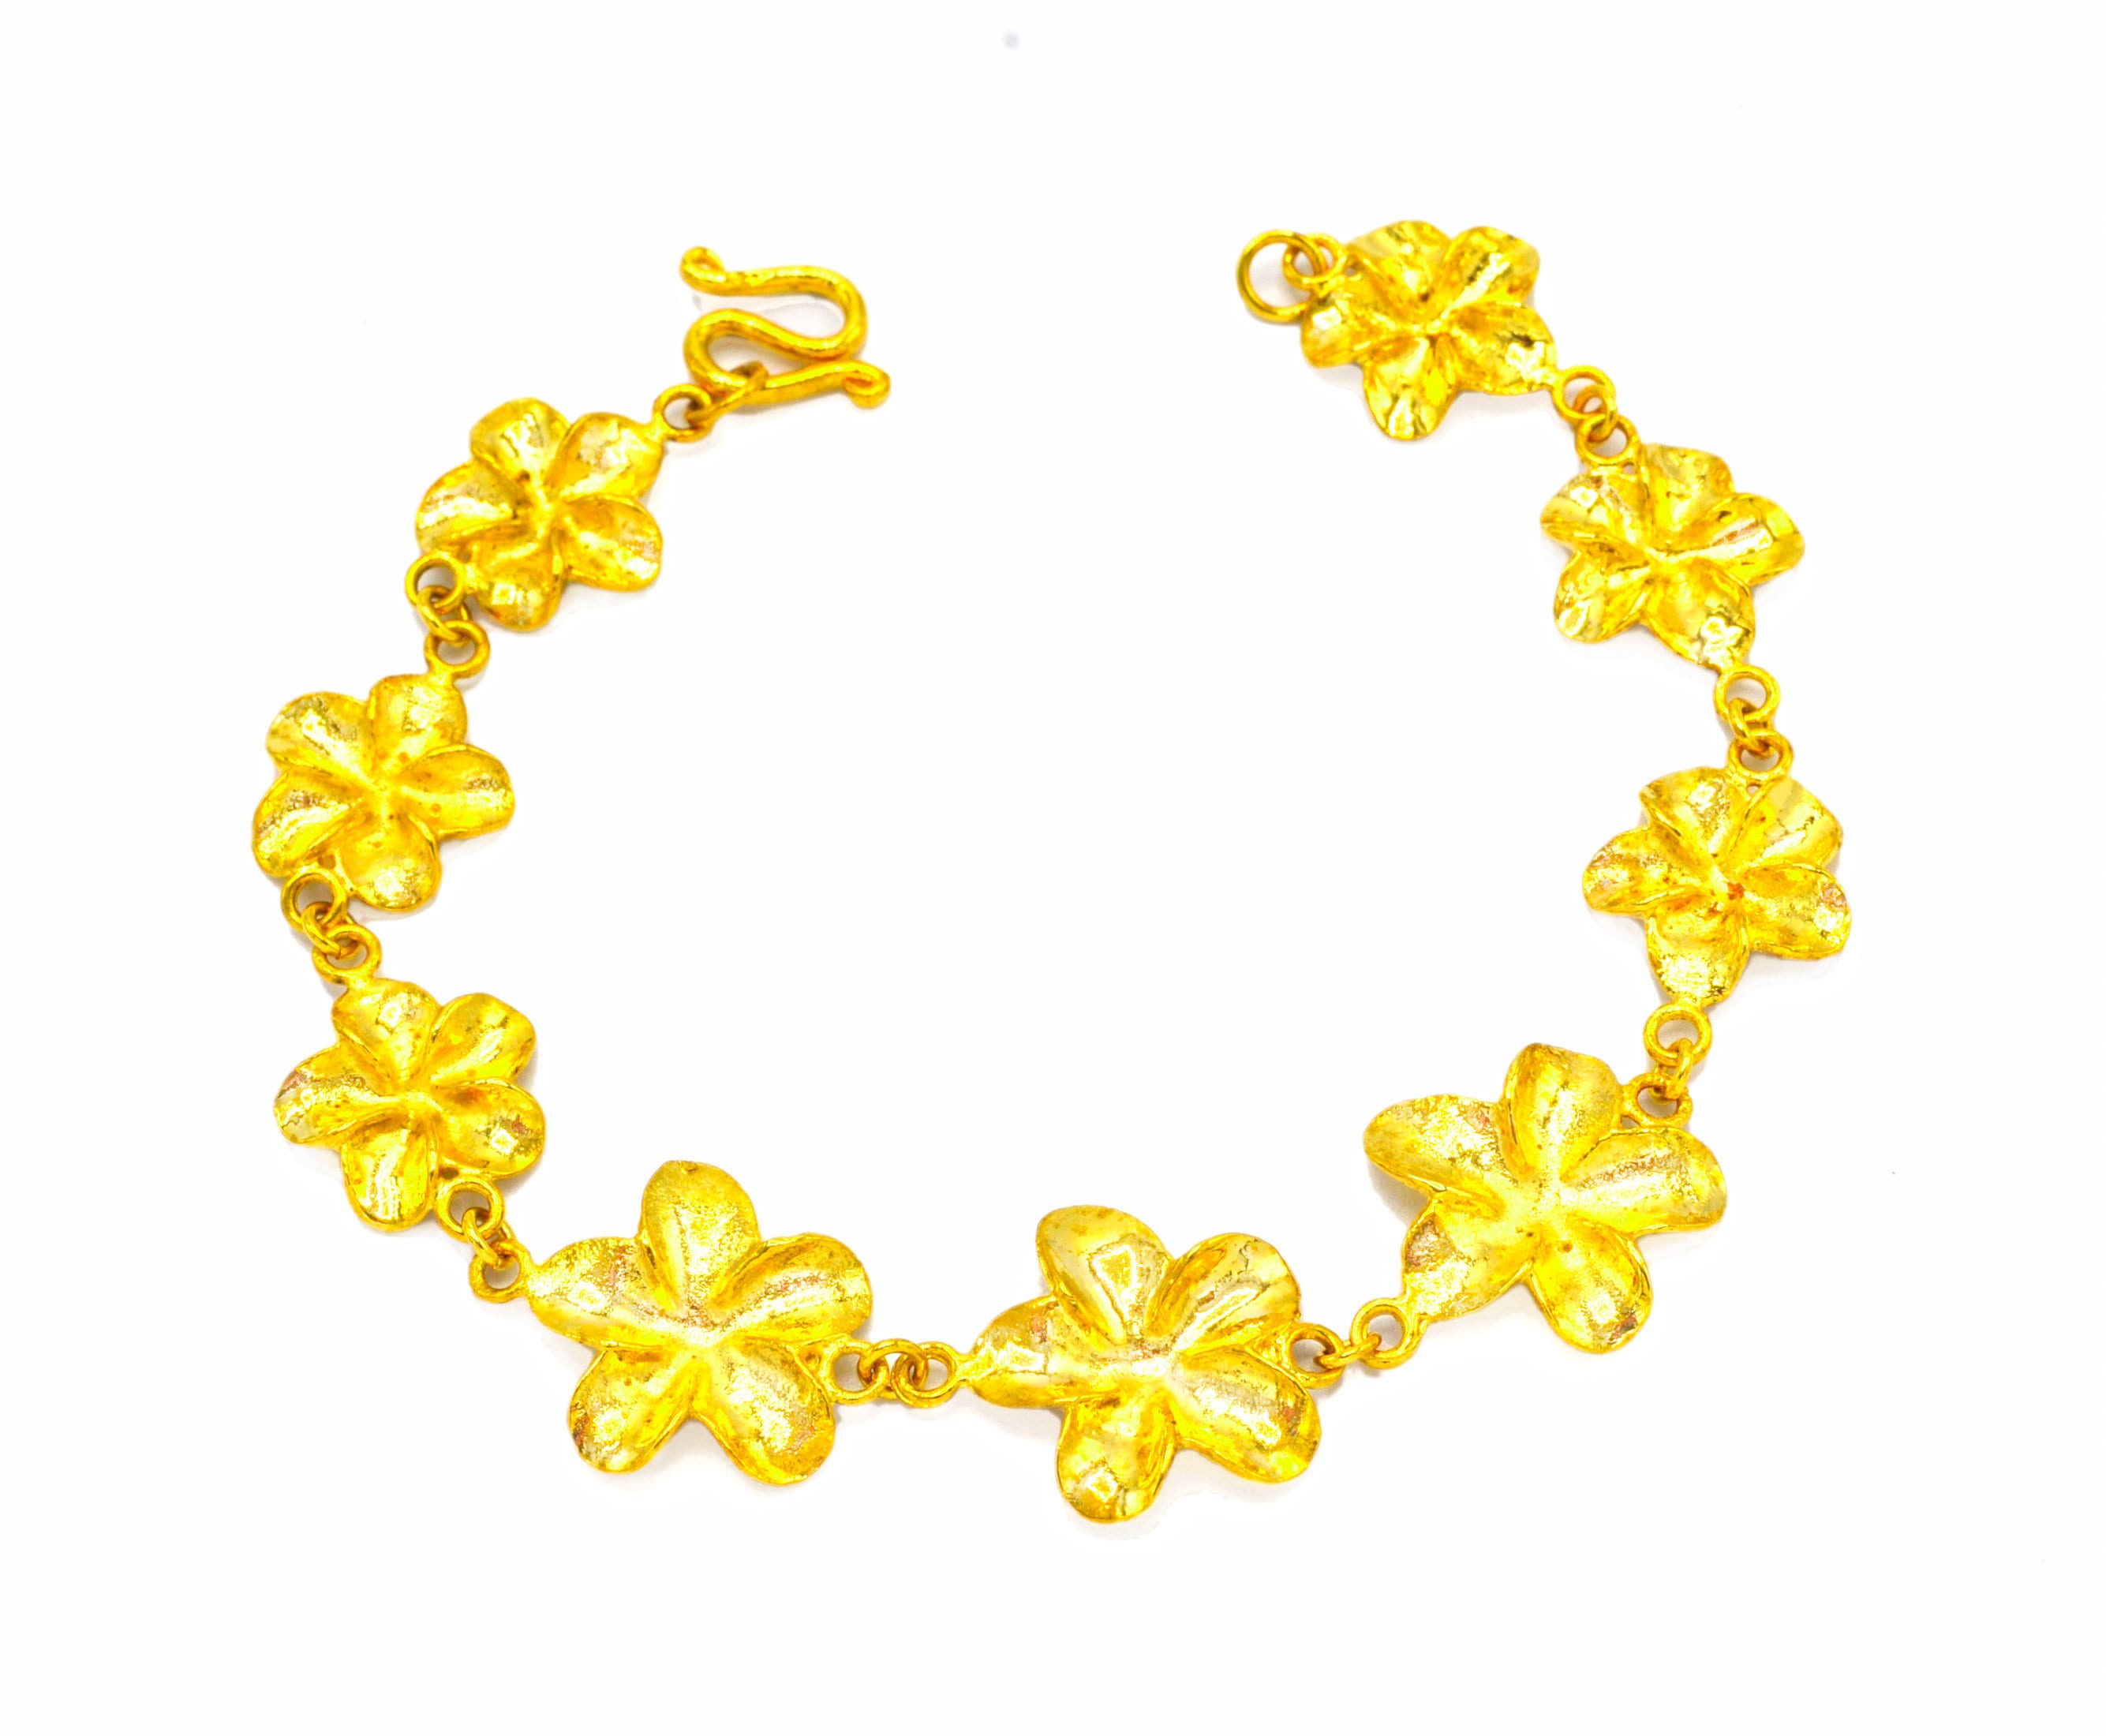 22ct Gold bracelet for Women, Men & Kids available online in UK